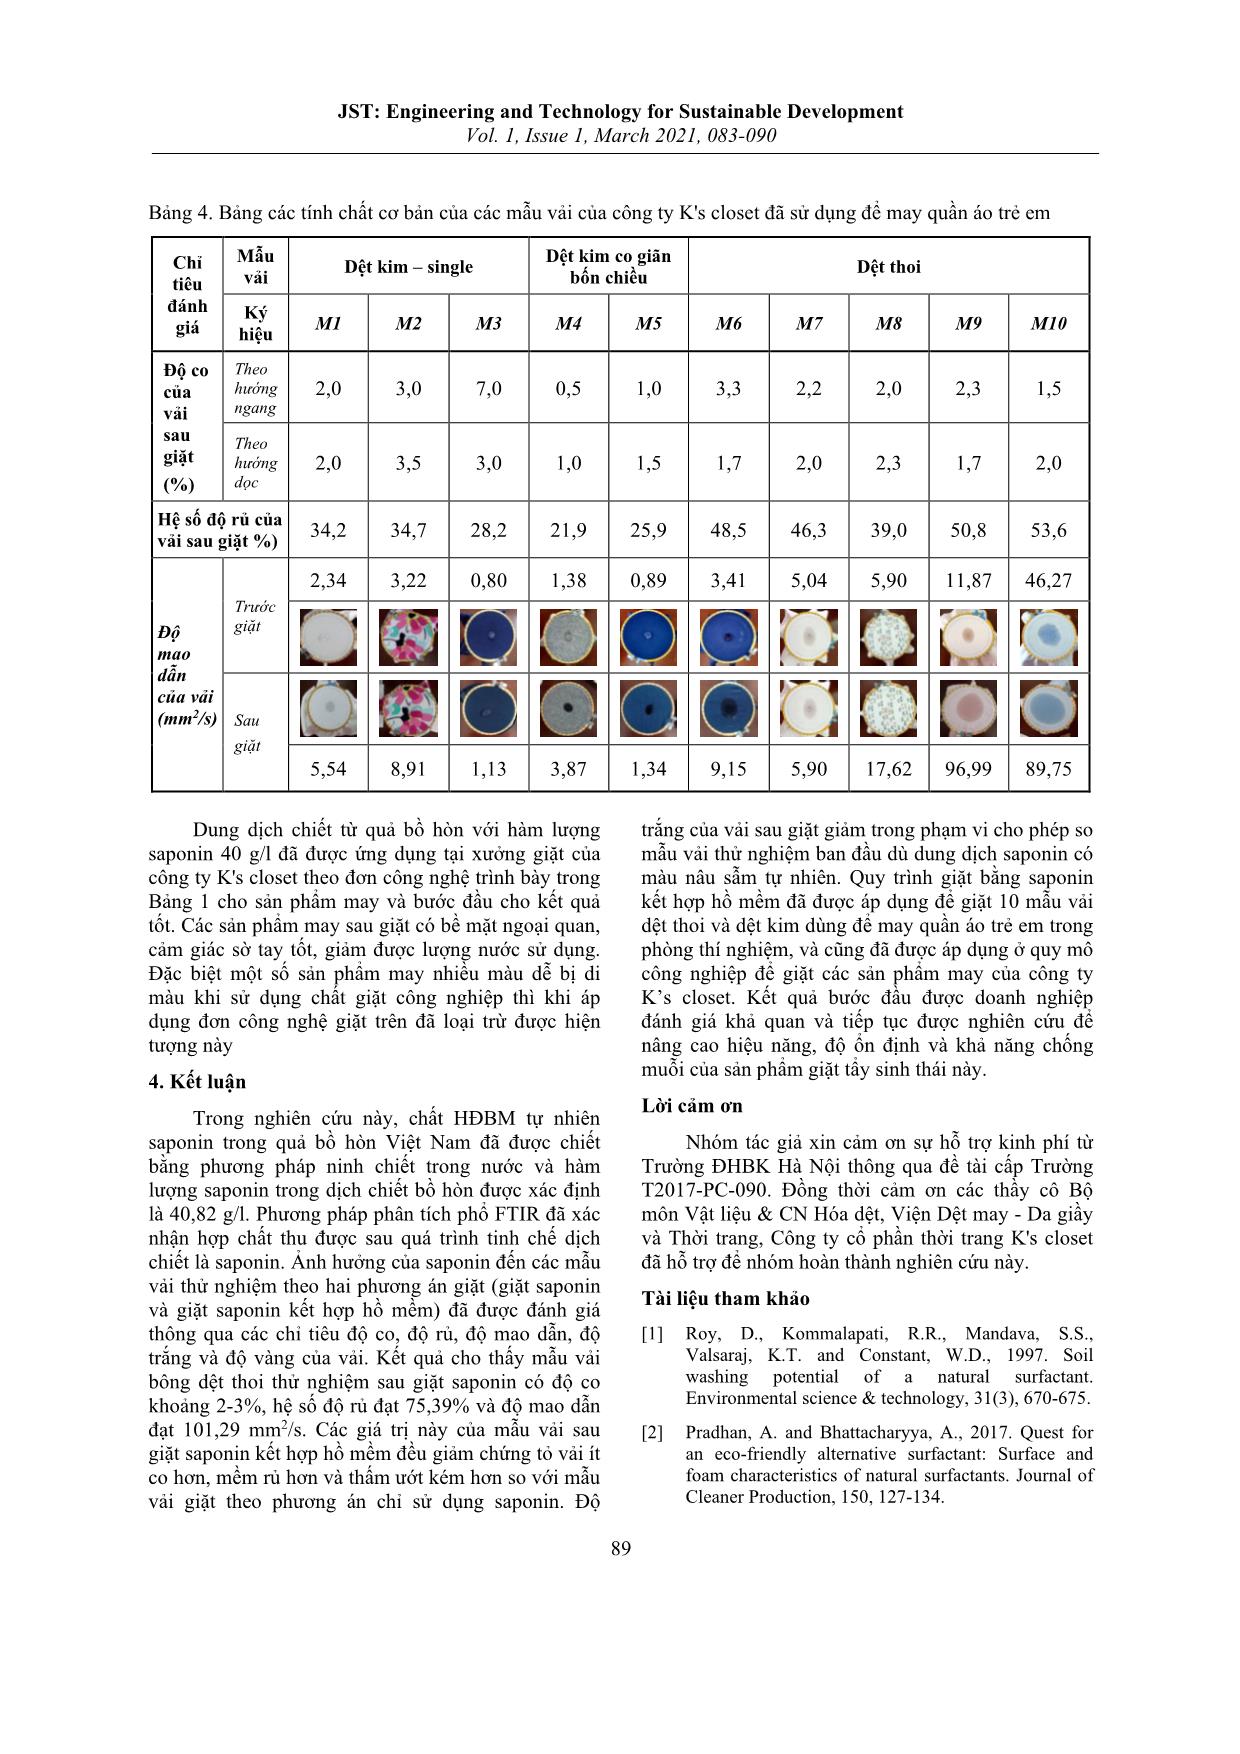 Nghiên cứu sự thay đổi một số tính chất của vải bông sau khi giặt bằng dịch chiết từ quả bồ hòn Việt Nam trang 7